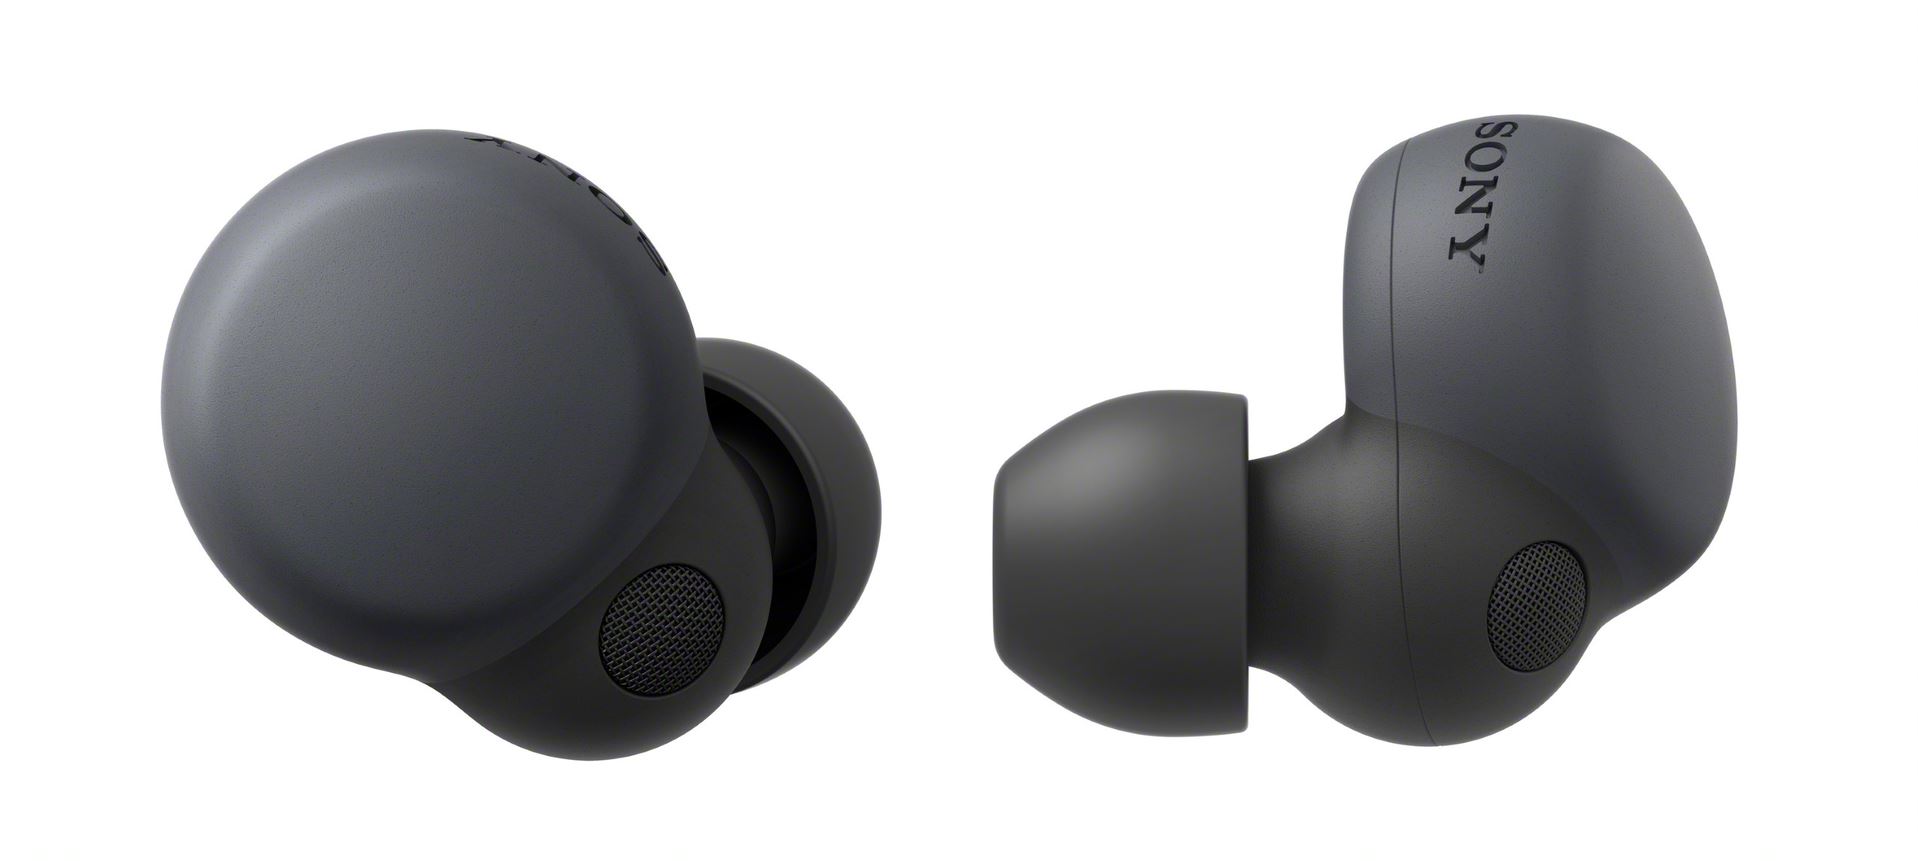 Společnost Sony představuje nový model sluchátek řady LinkBuds a LinkBuds S